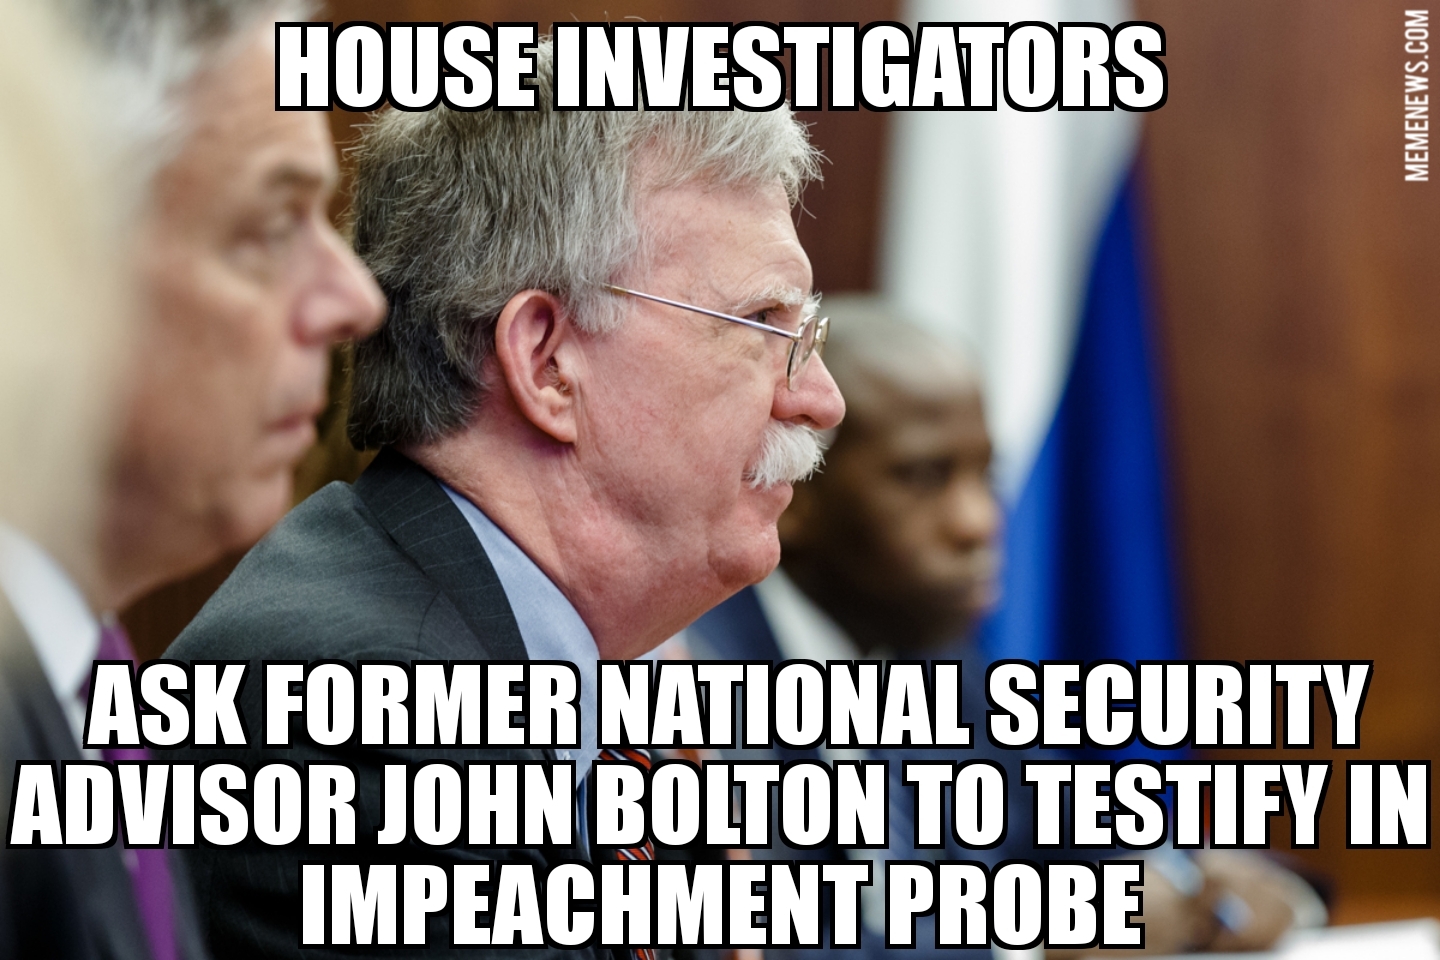 House investigators ask John Bolton to testify in impeachment probe